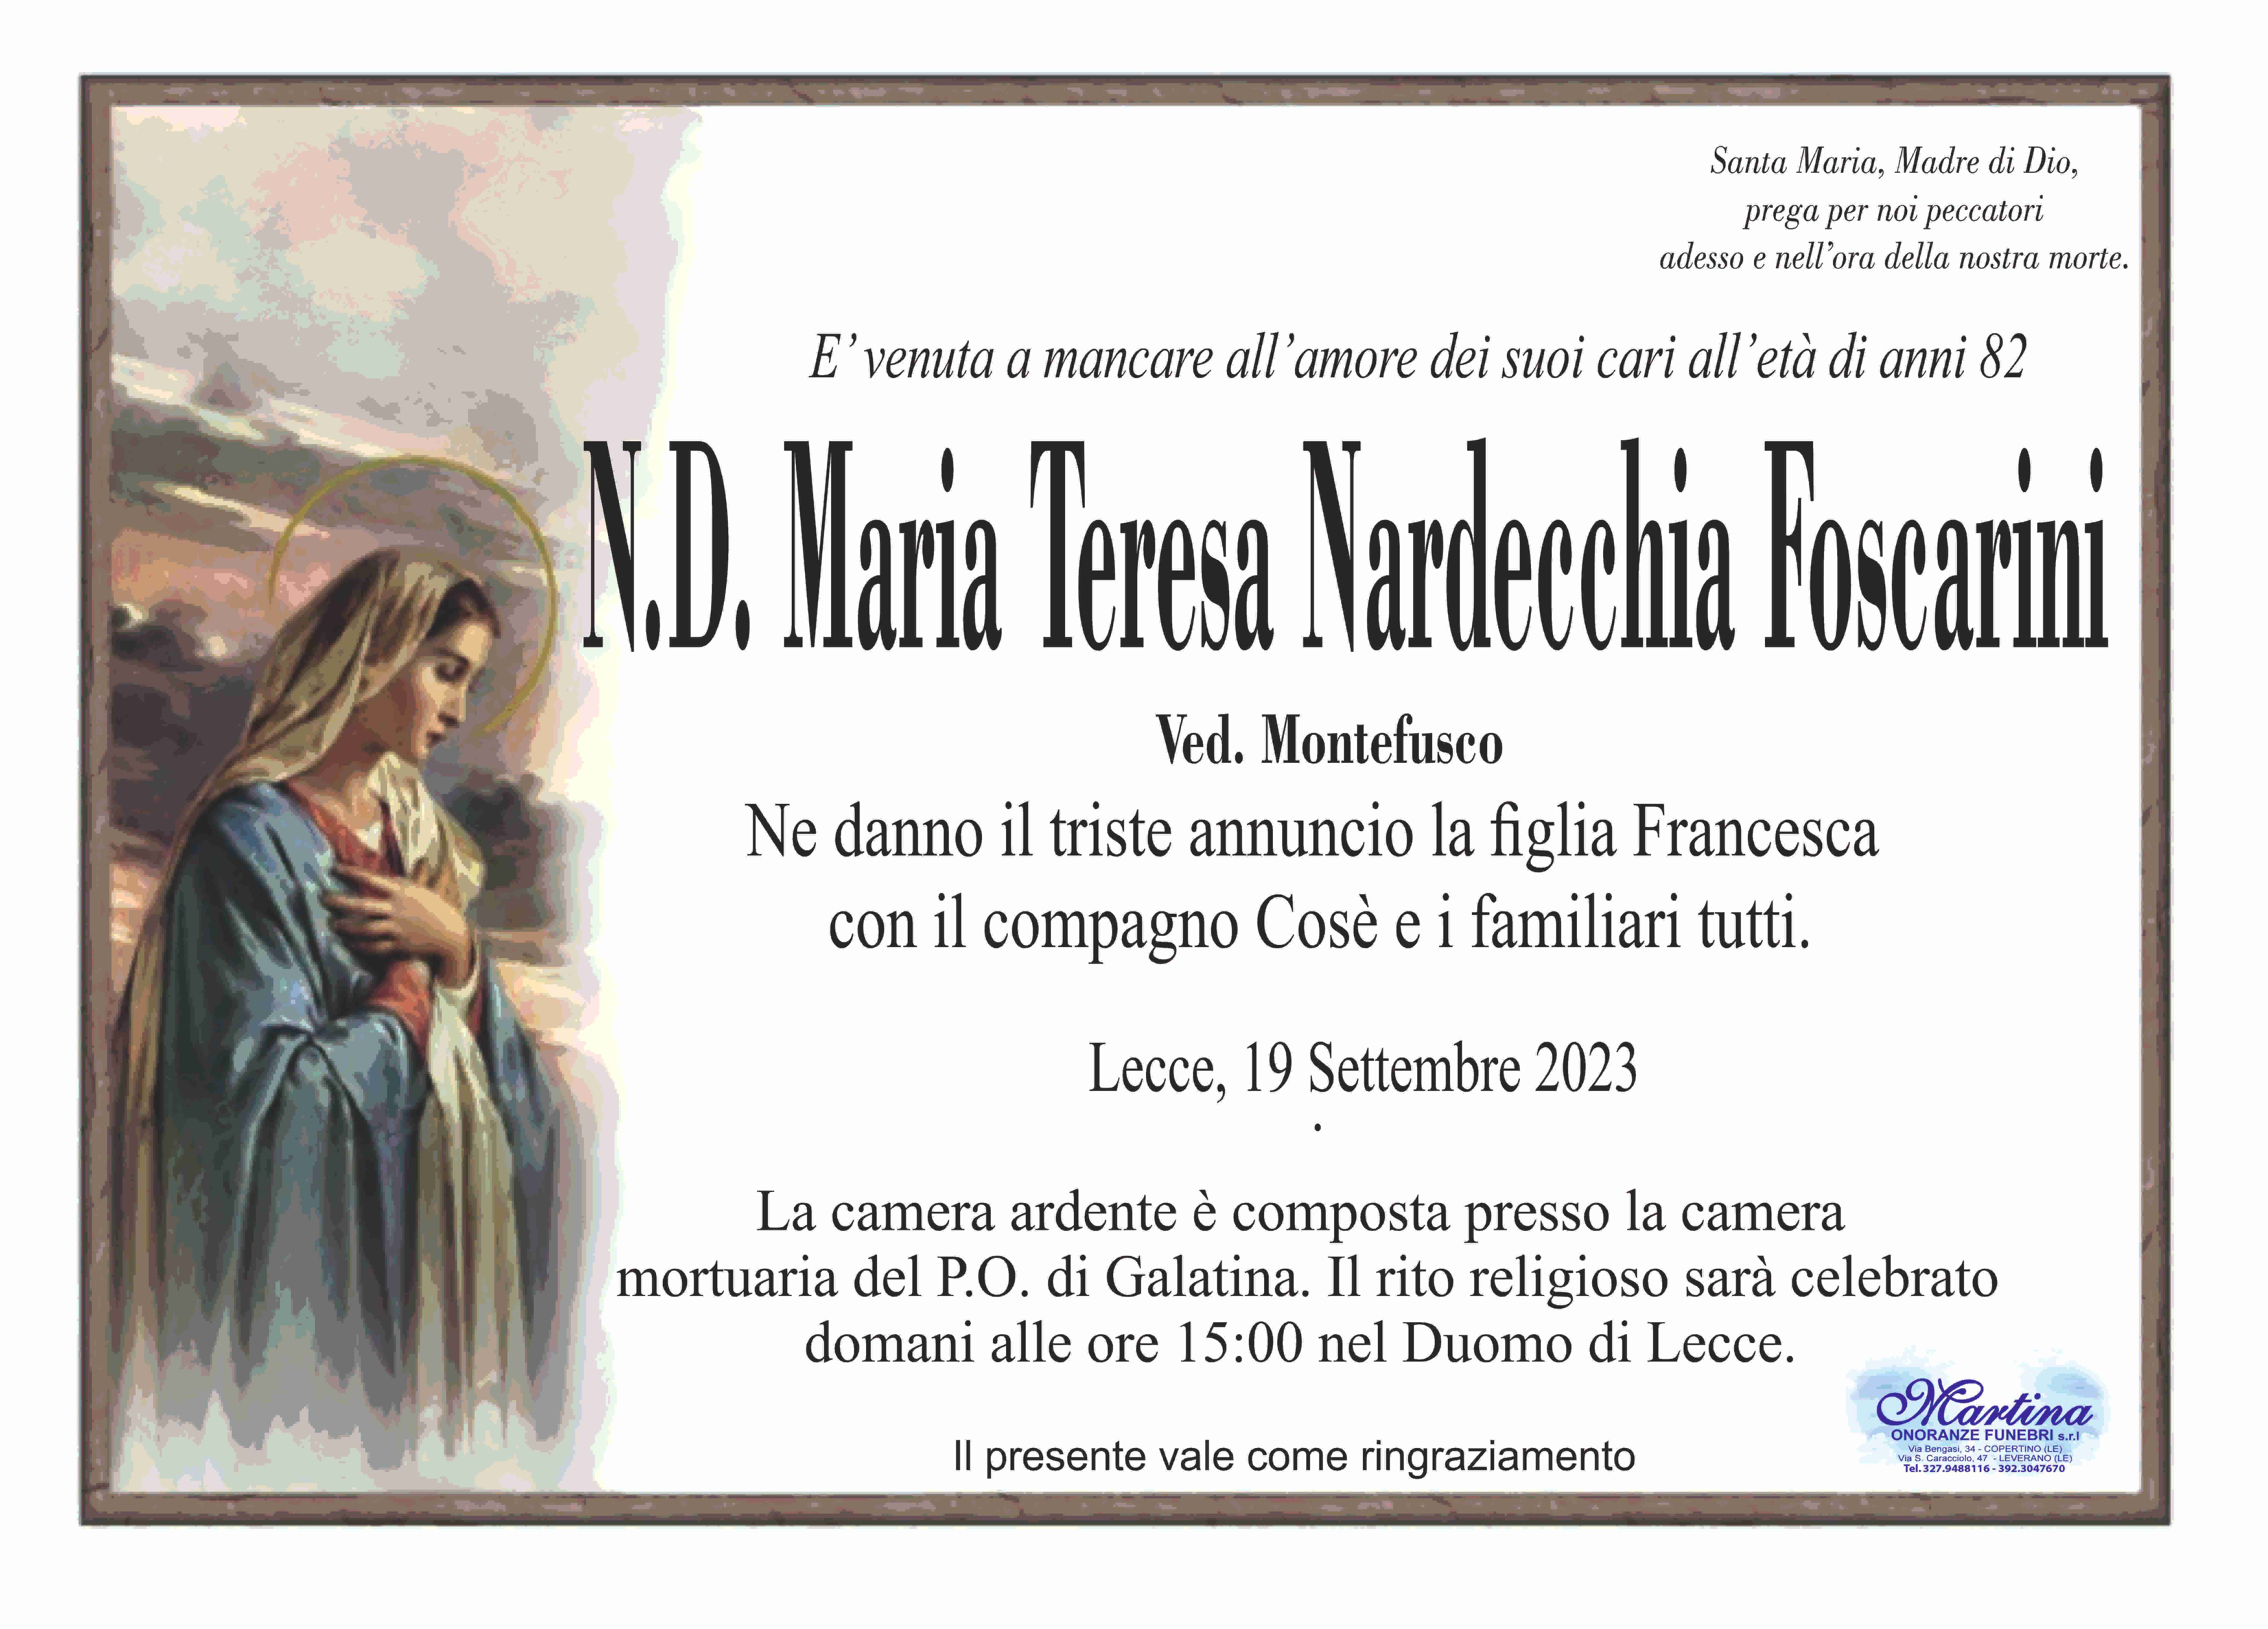 Nardecchia Foscarini Maria Teresa